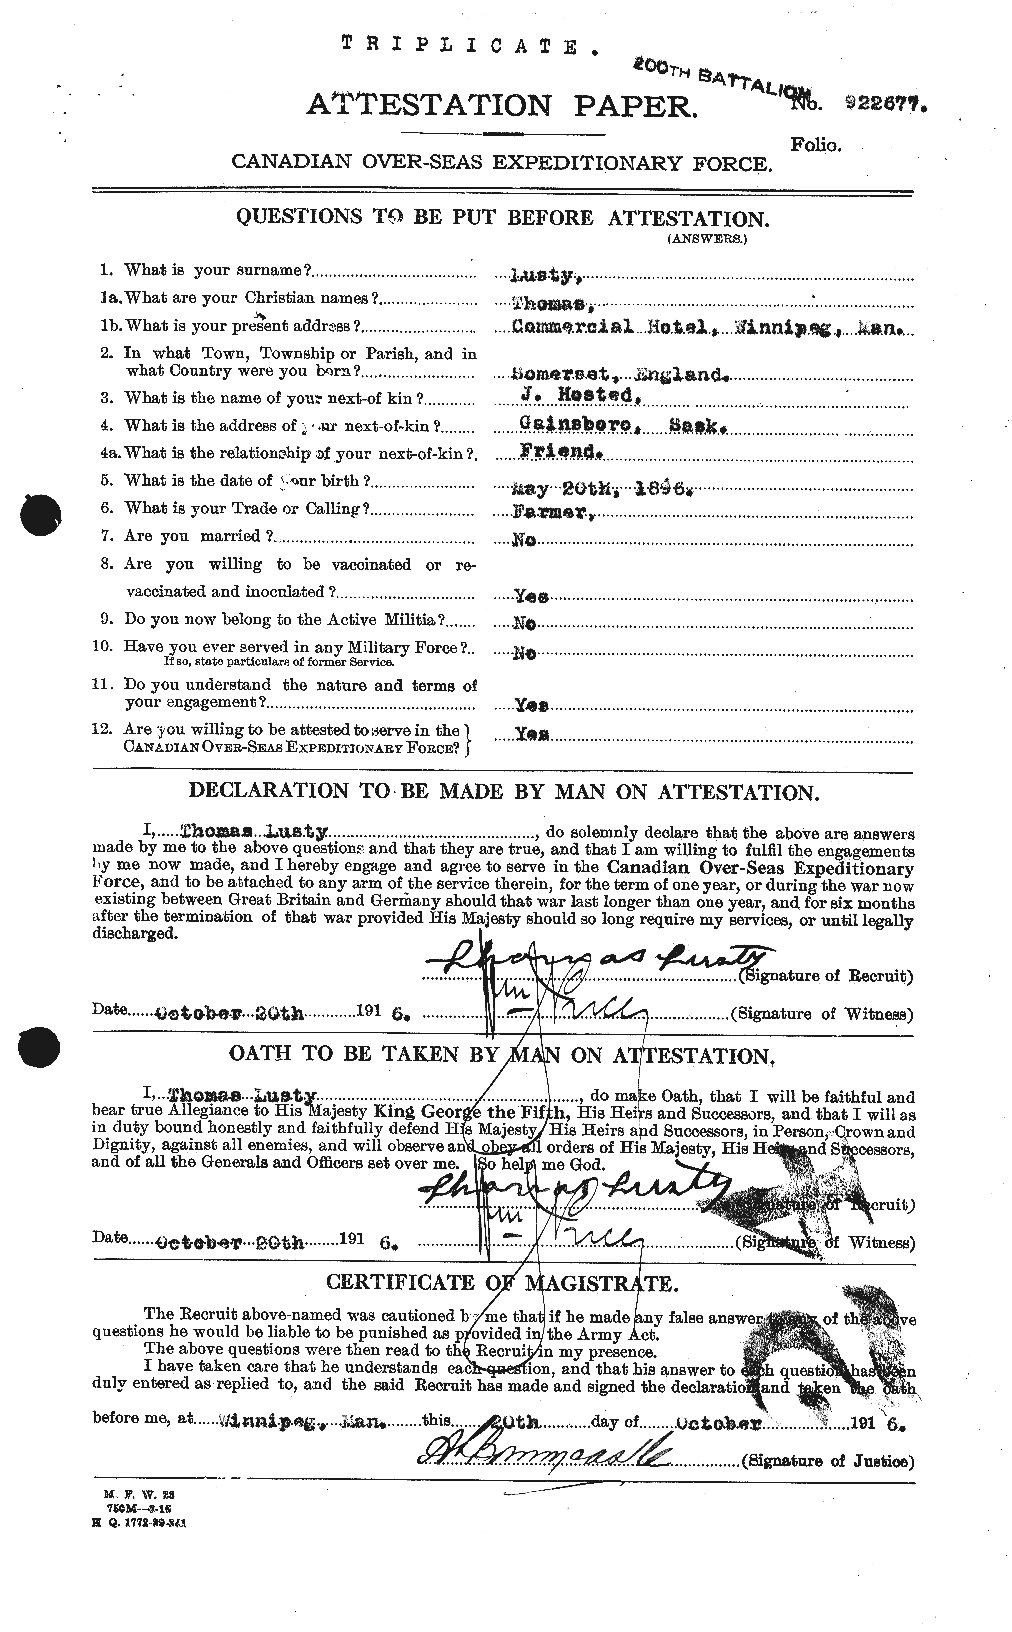 Dossiers du Personnel de la Première Guerre mondiale - CEC 475908a